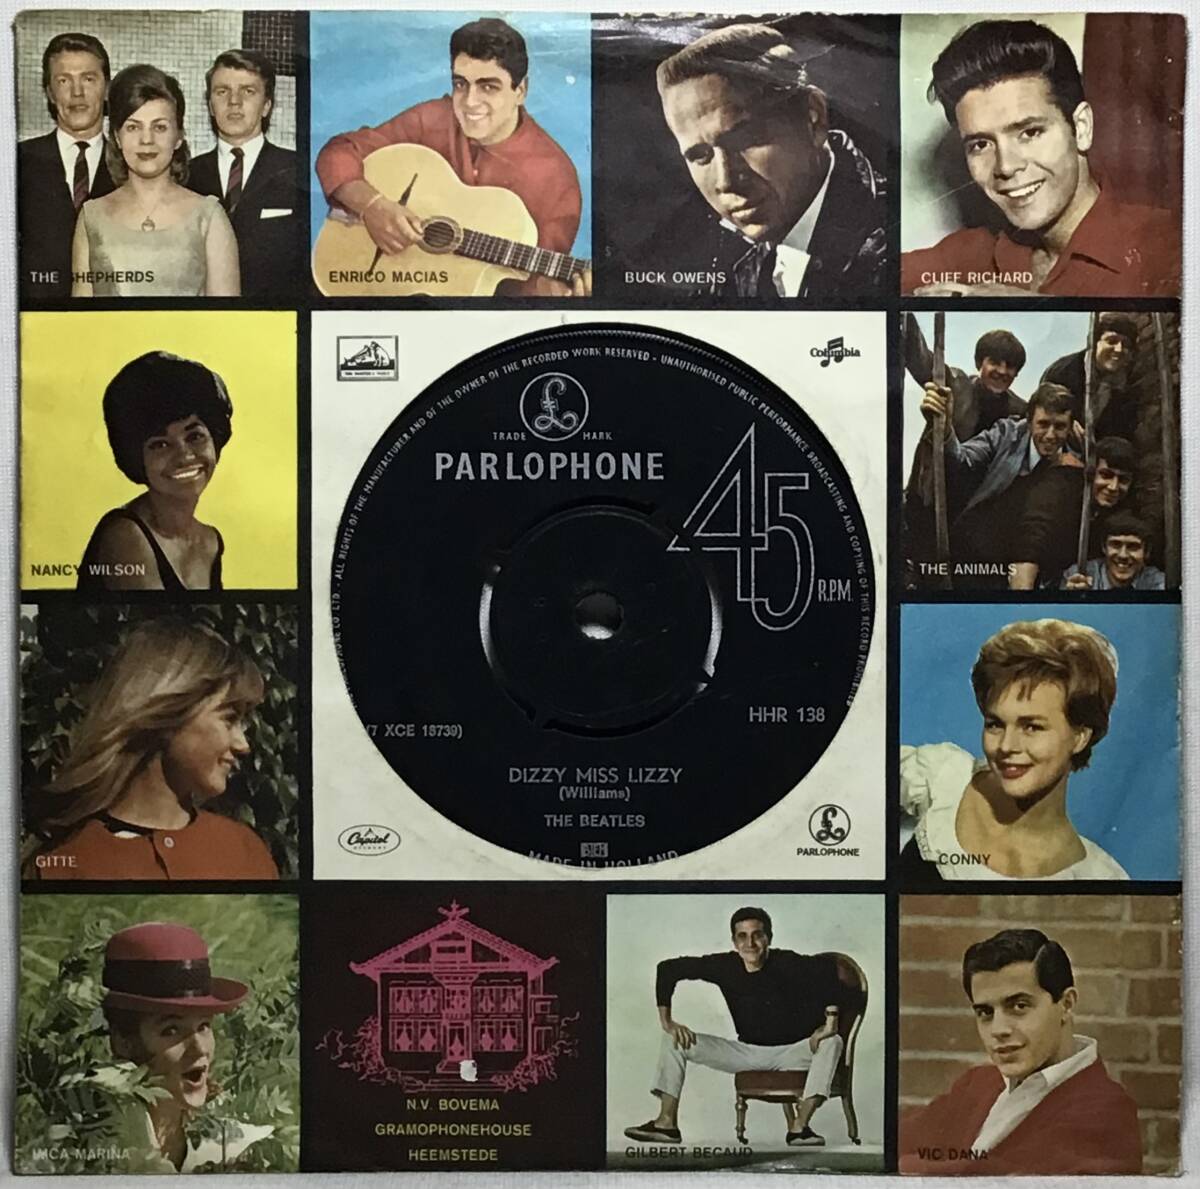 【蘭7】 THE BEATLES ザ・ビートルズ / DIZZY MISS LIZZY / YESTERDAY / 1965 オランダ盤 PARLOPHONE 7インチレコード EP 45 試聴済_画像1